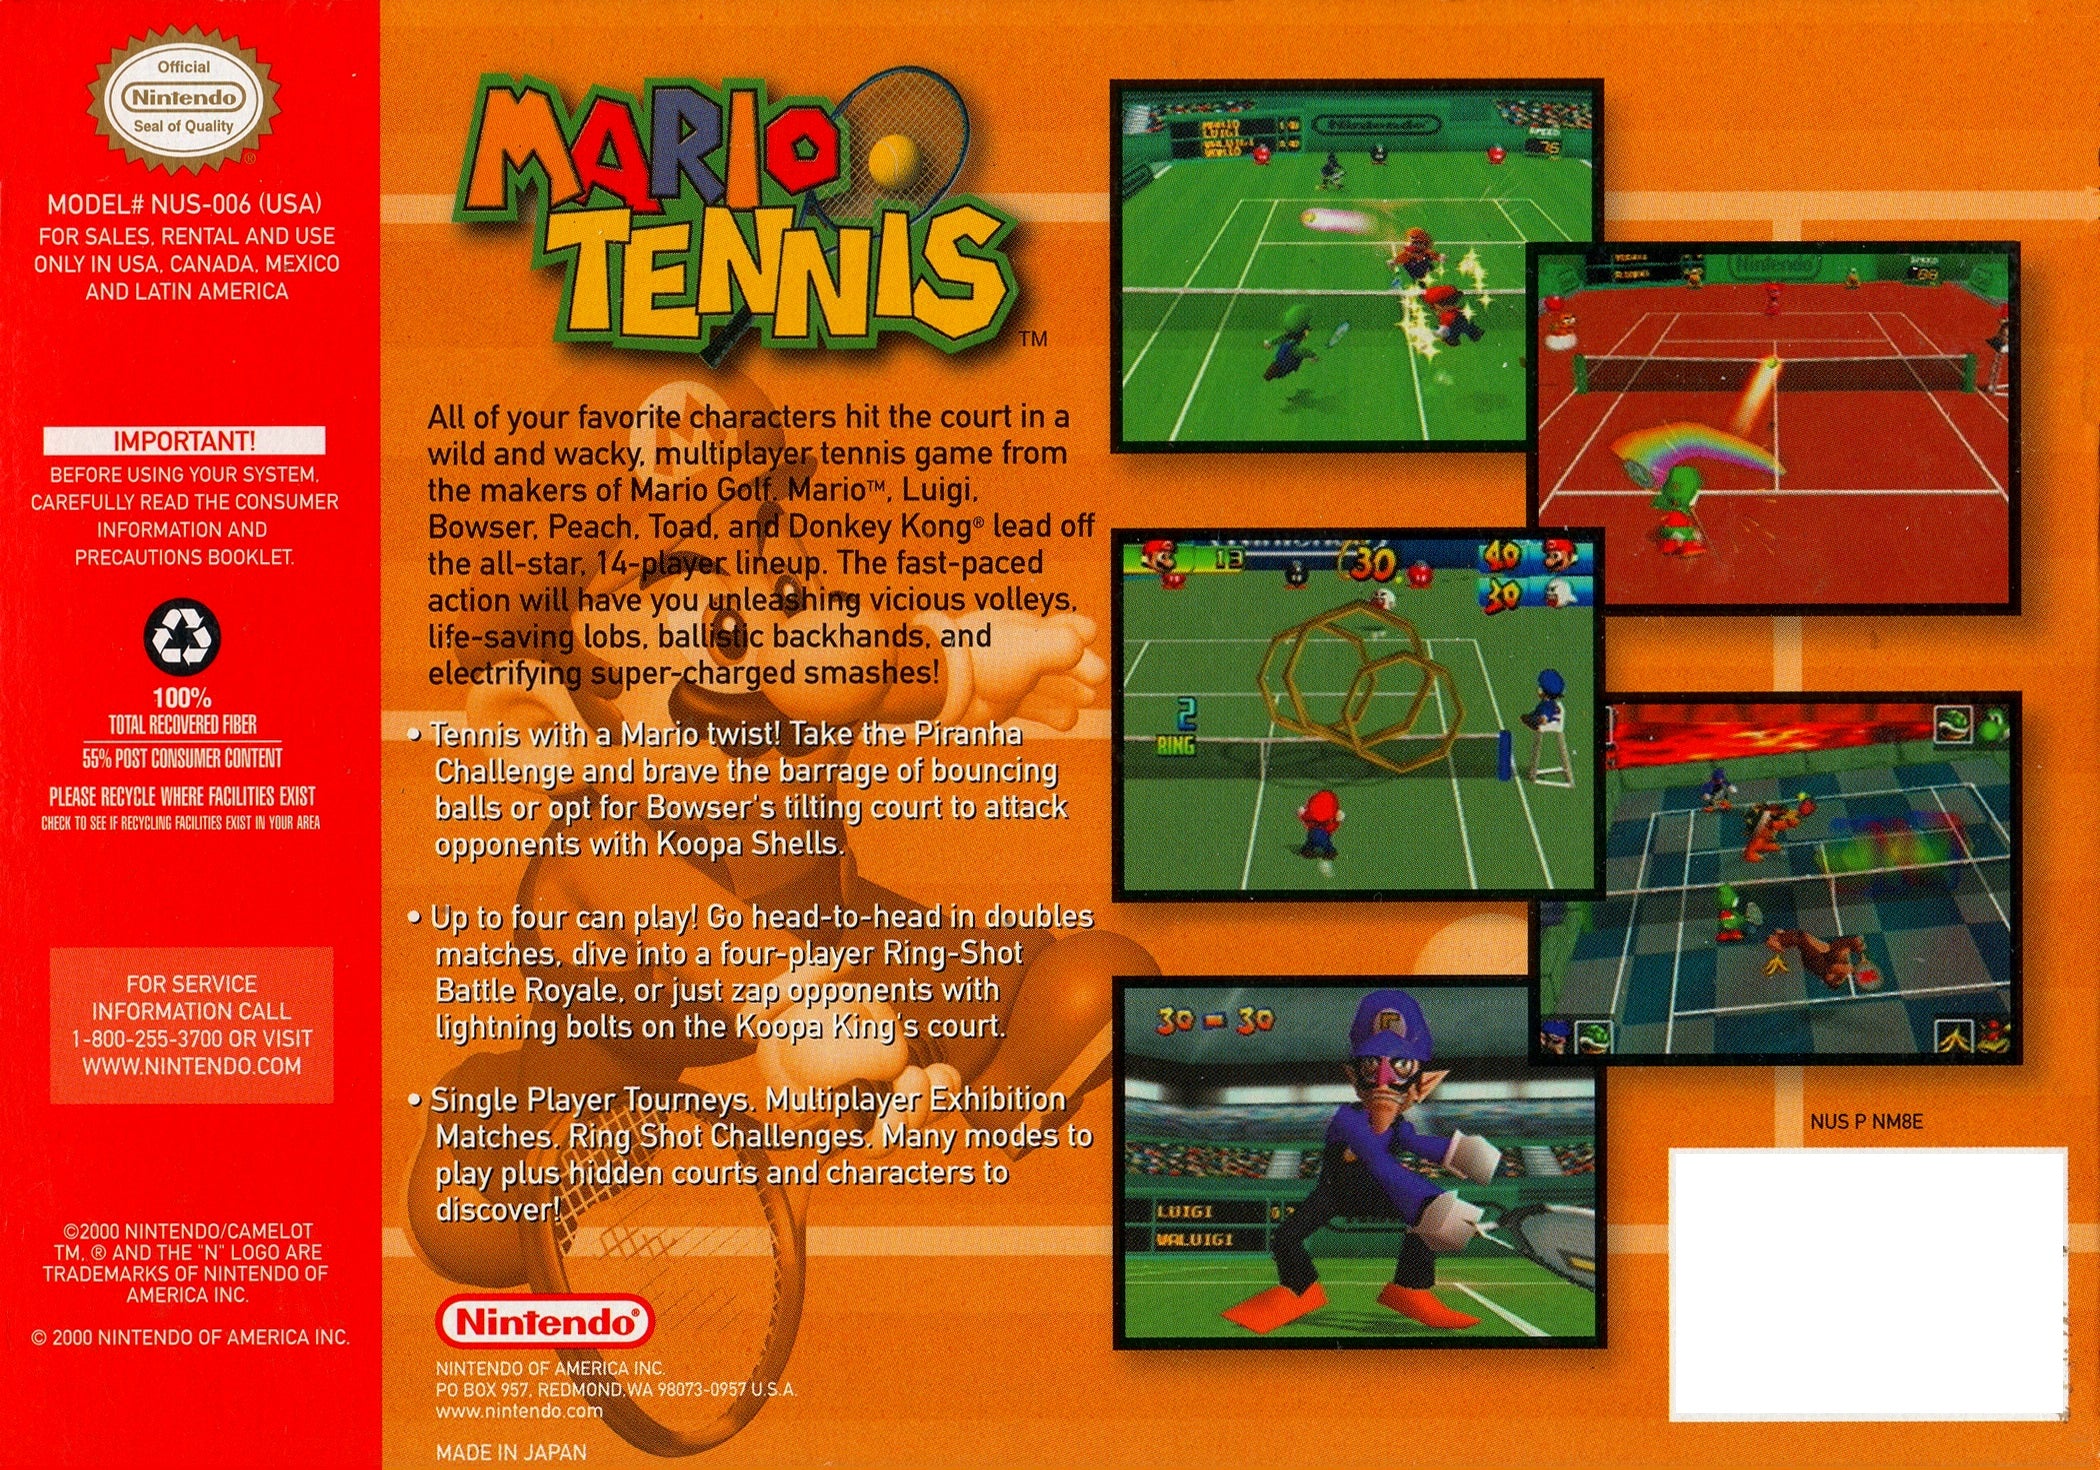 Mario Tennis - Authentic Nintendo 64 (N64) Game Cartridge